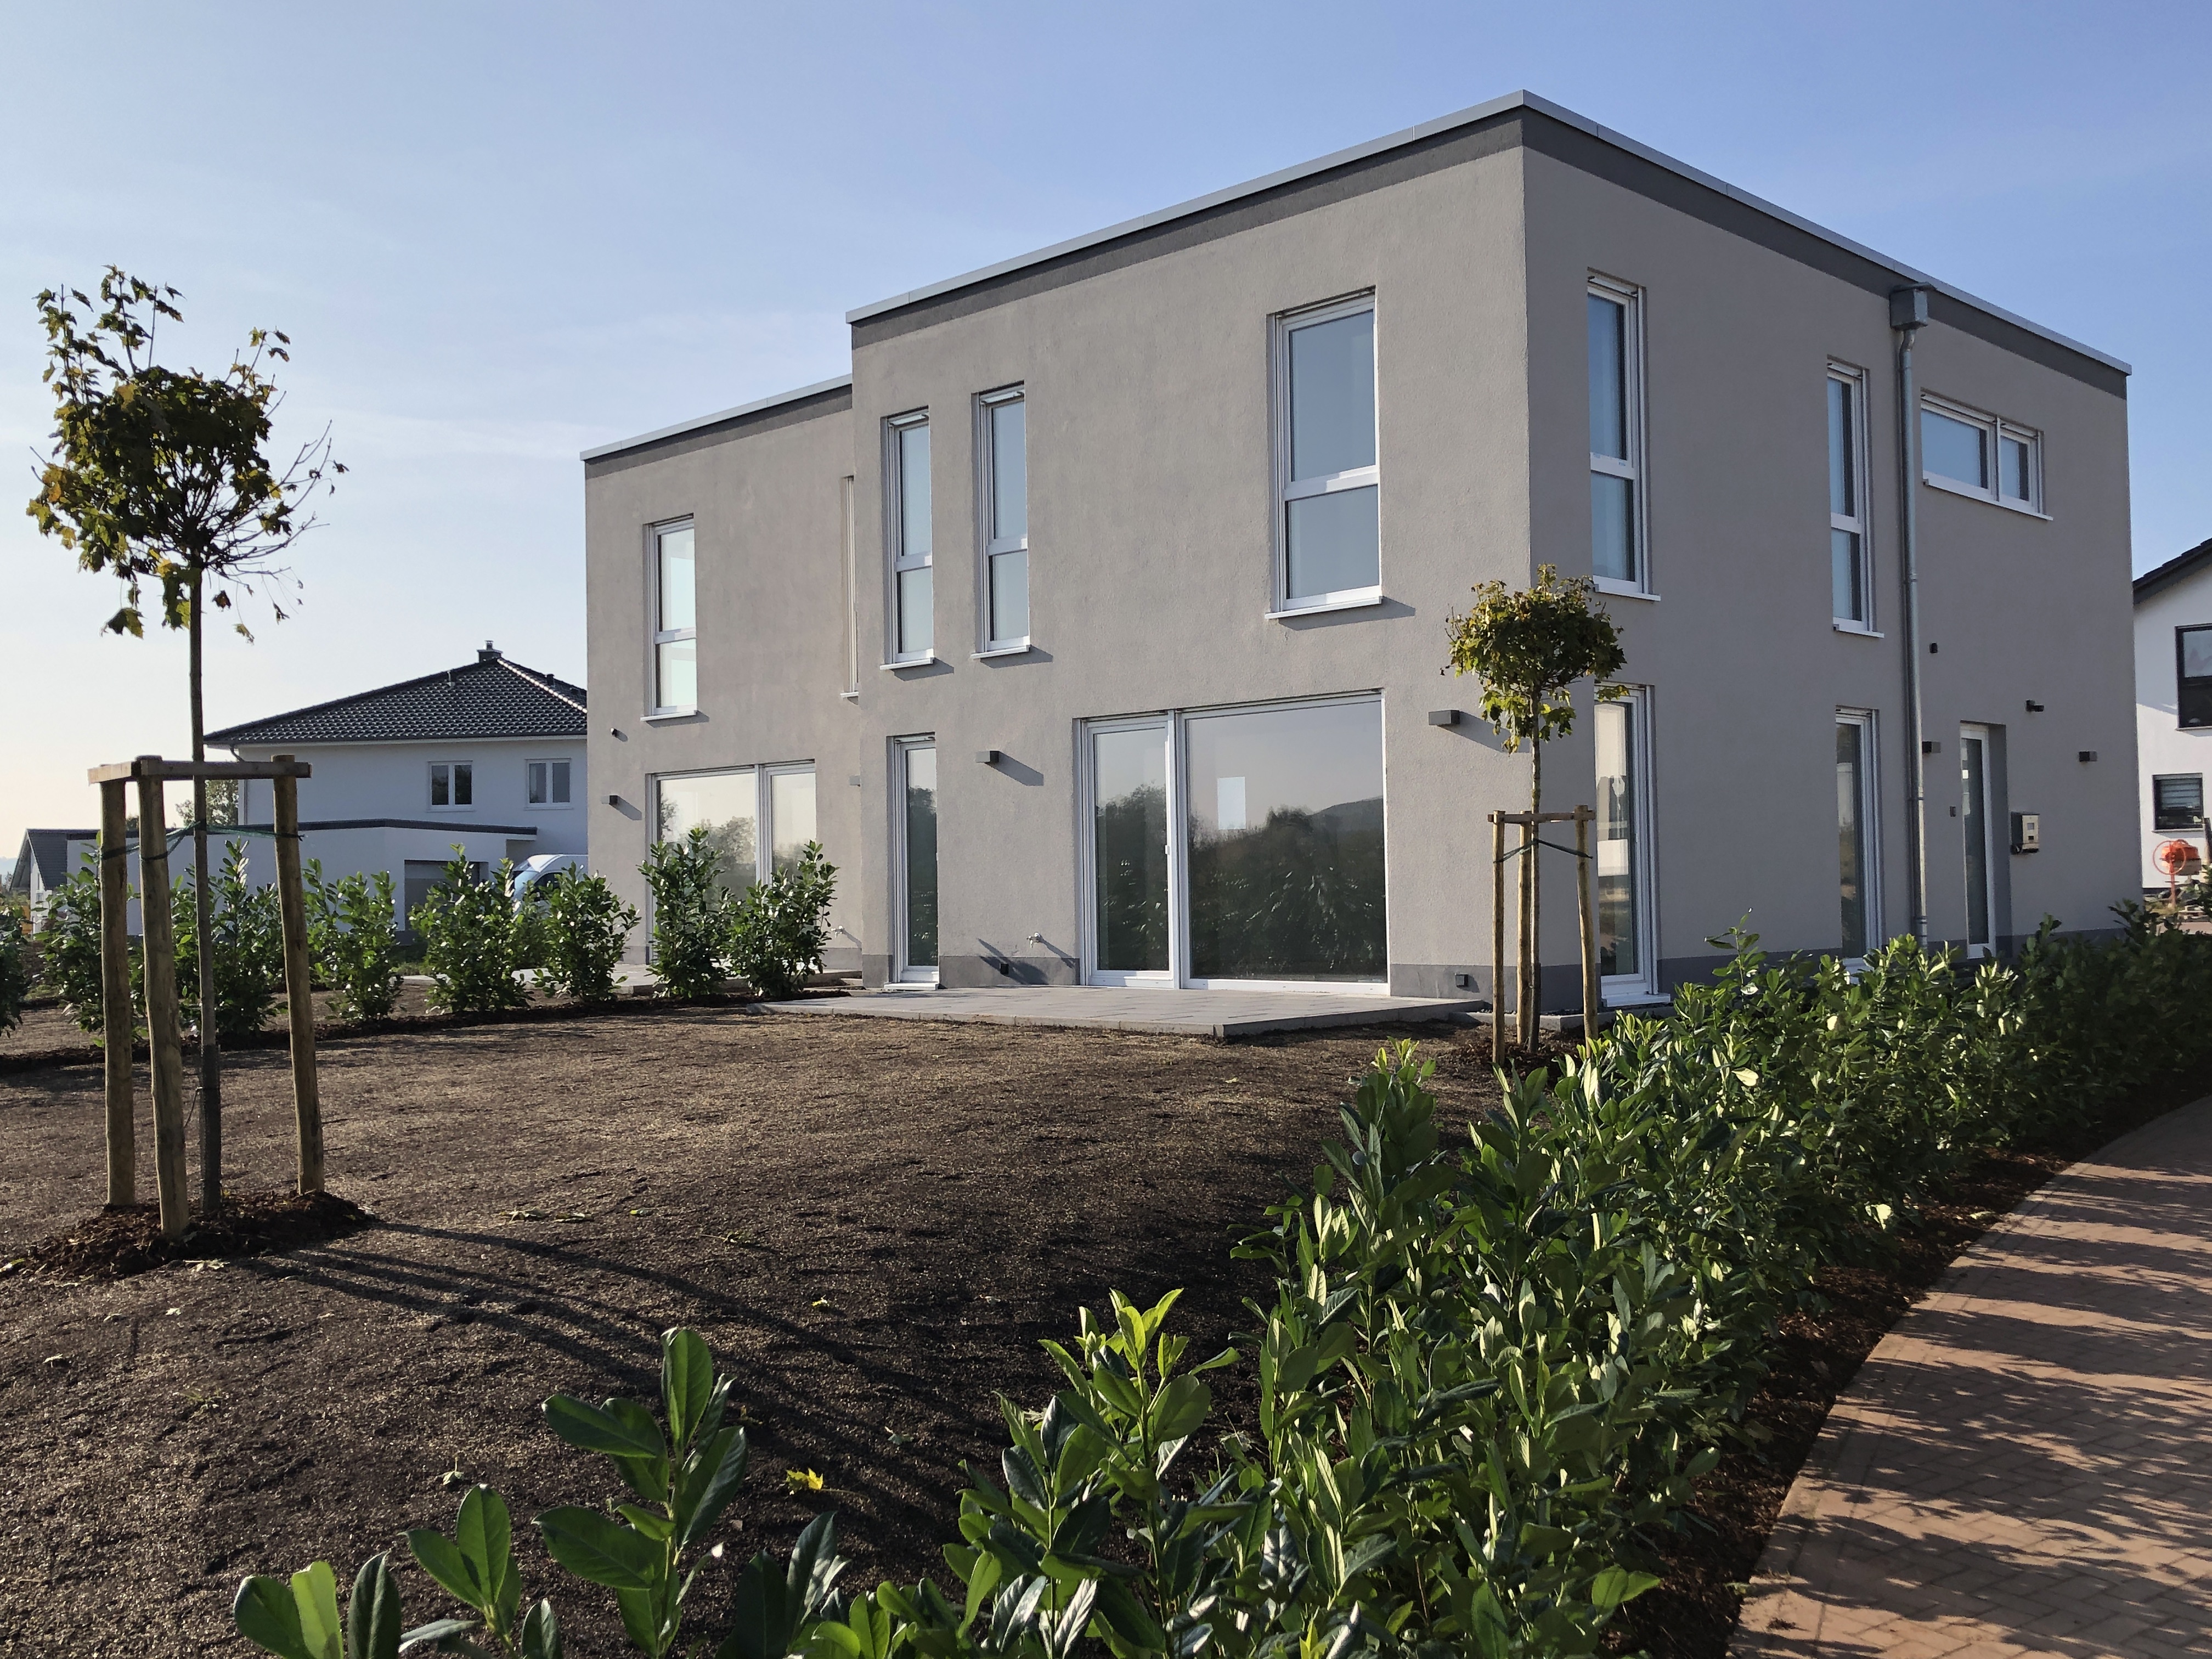 Neubau Doppelhaushälfte in Roxheim  1